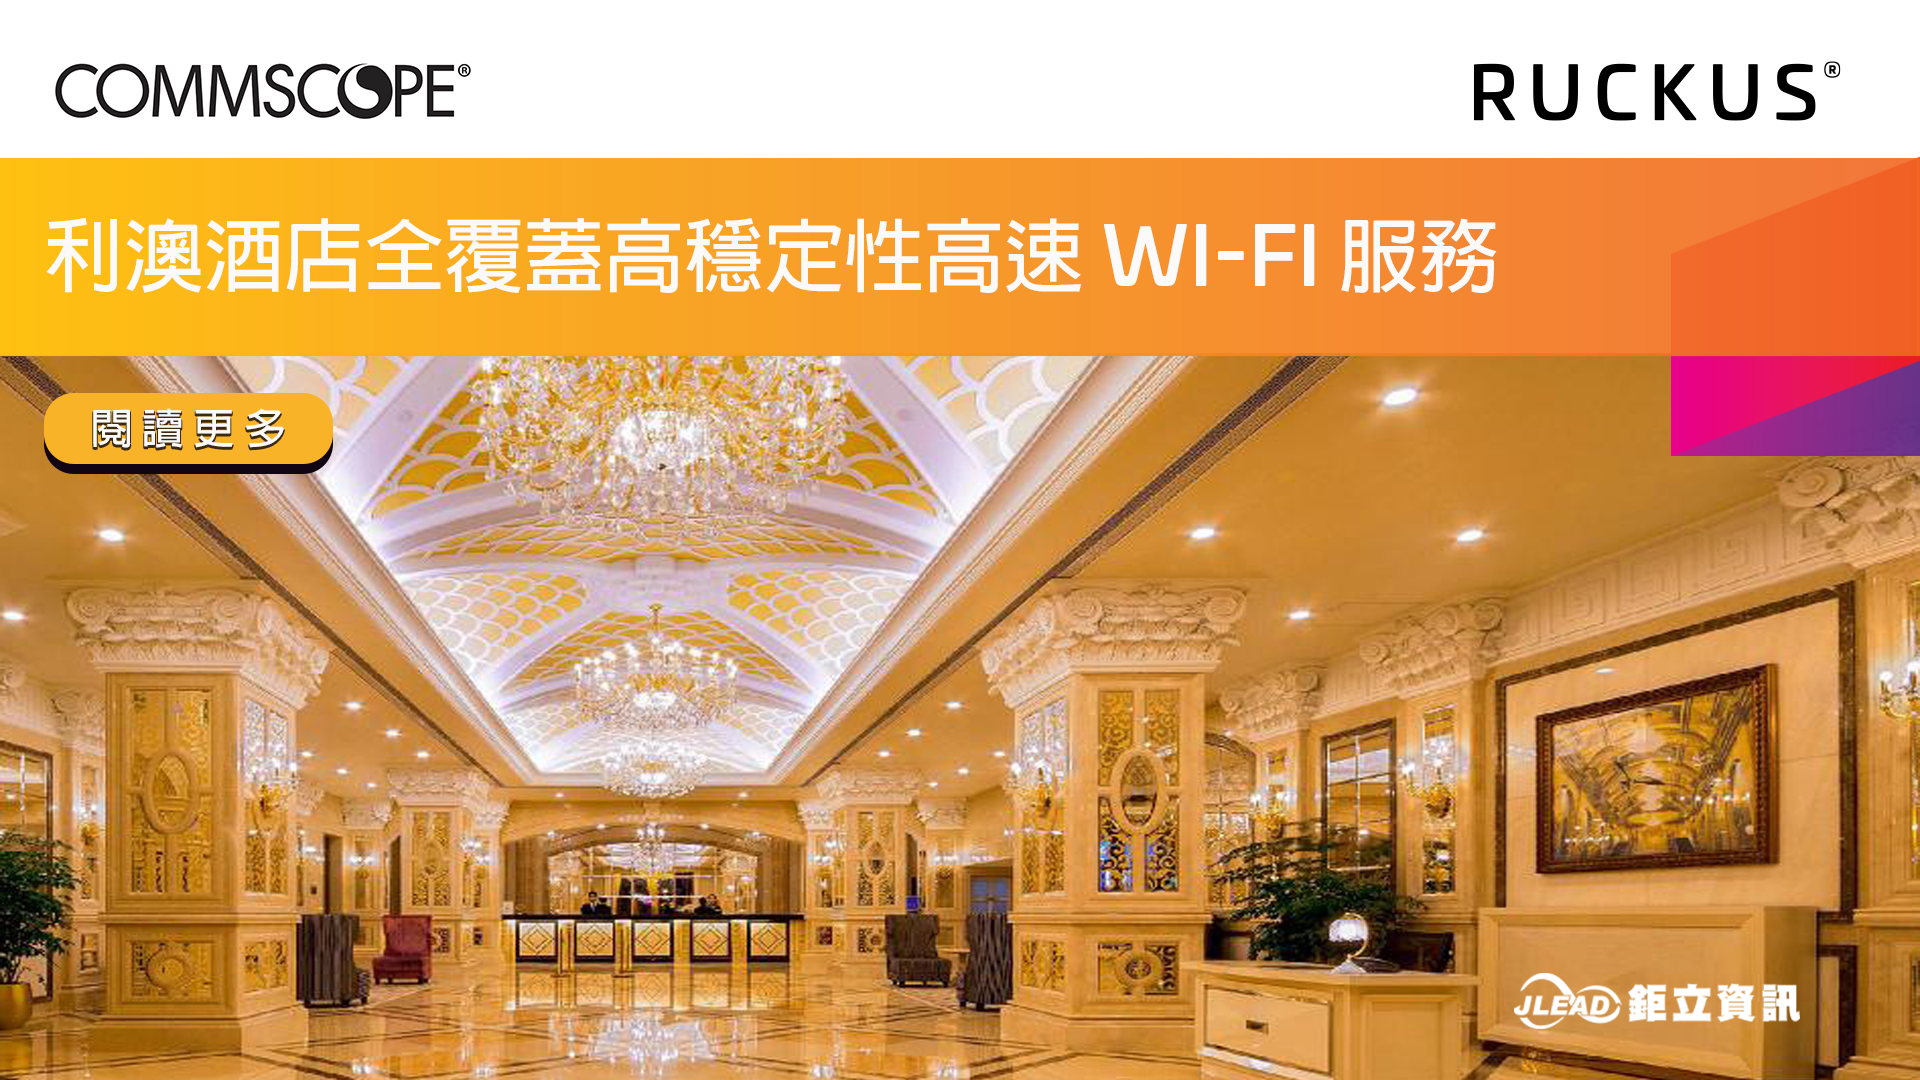 利澳酒店採用 Ruckus 交換器與無線網路基地台(AP)，全面提升飯店內無線網路速度及覆蓋率